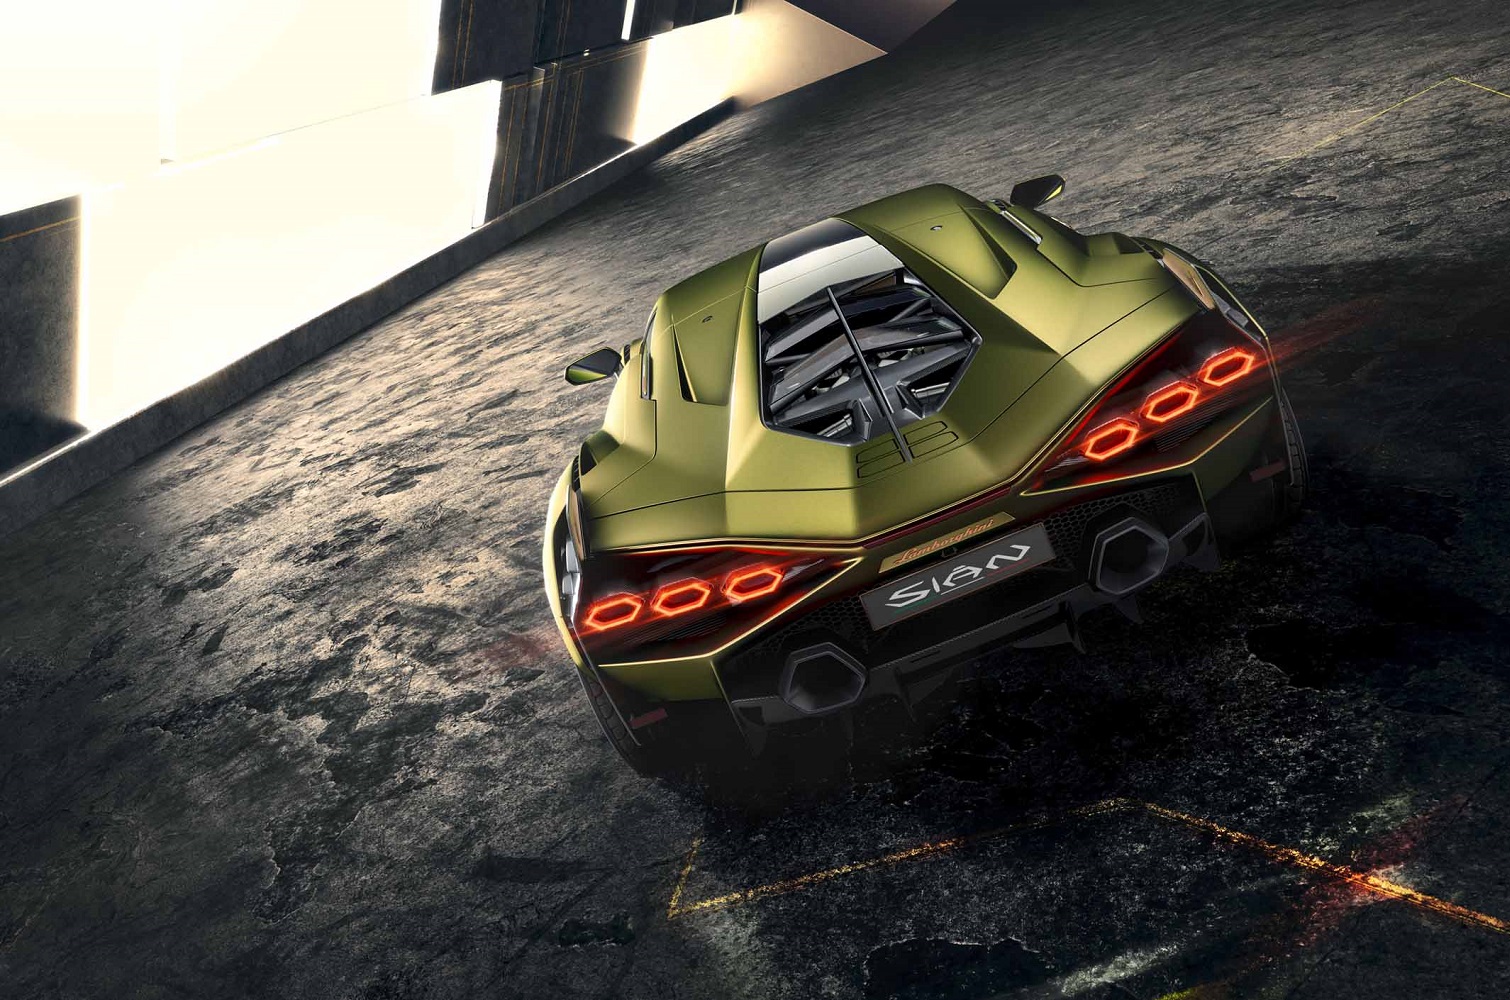 Lamborghini Sian hypercar: the CAR lowdown